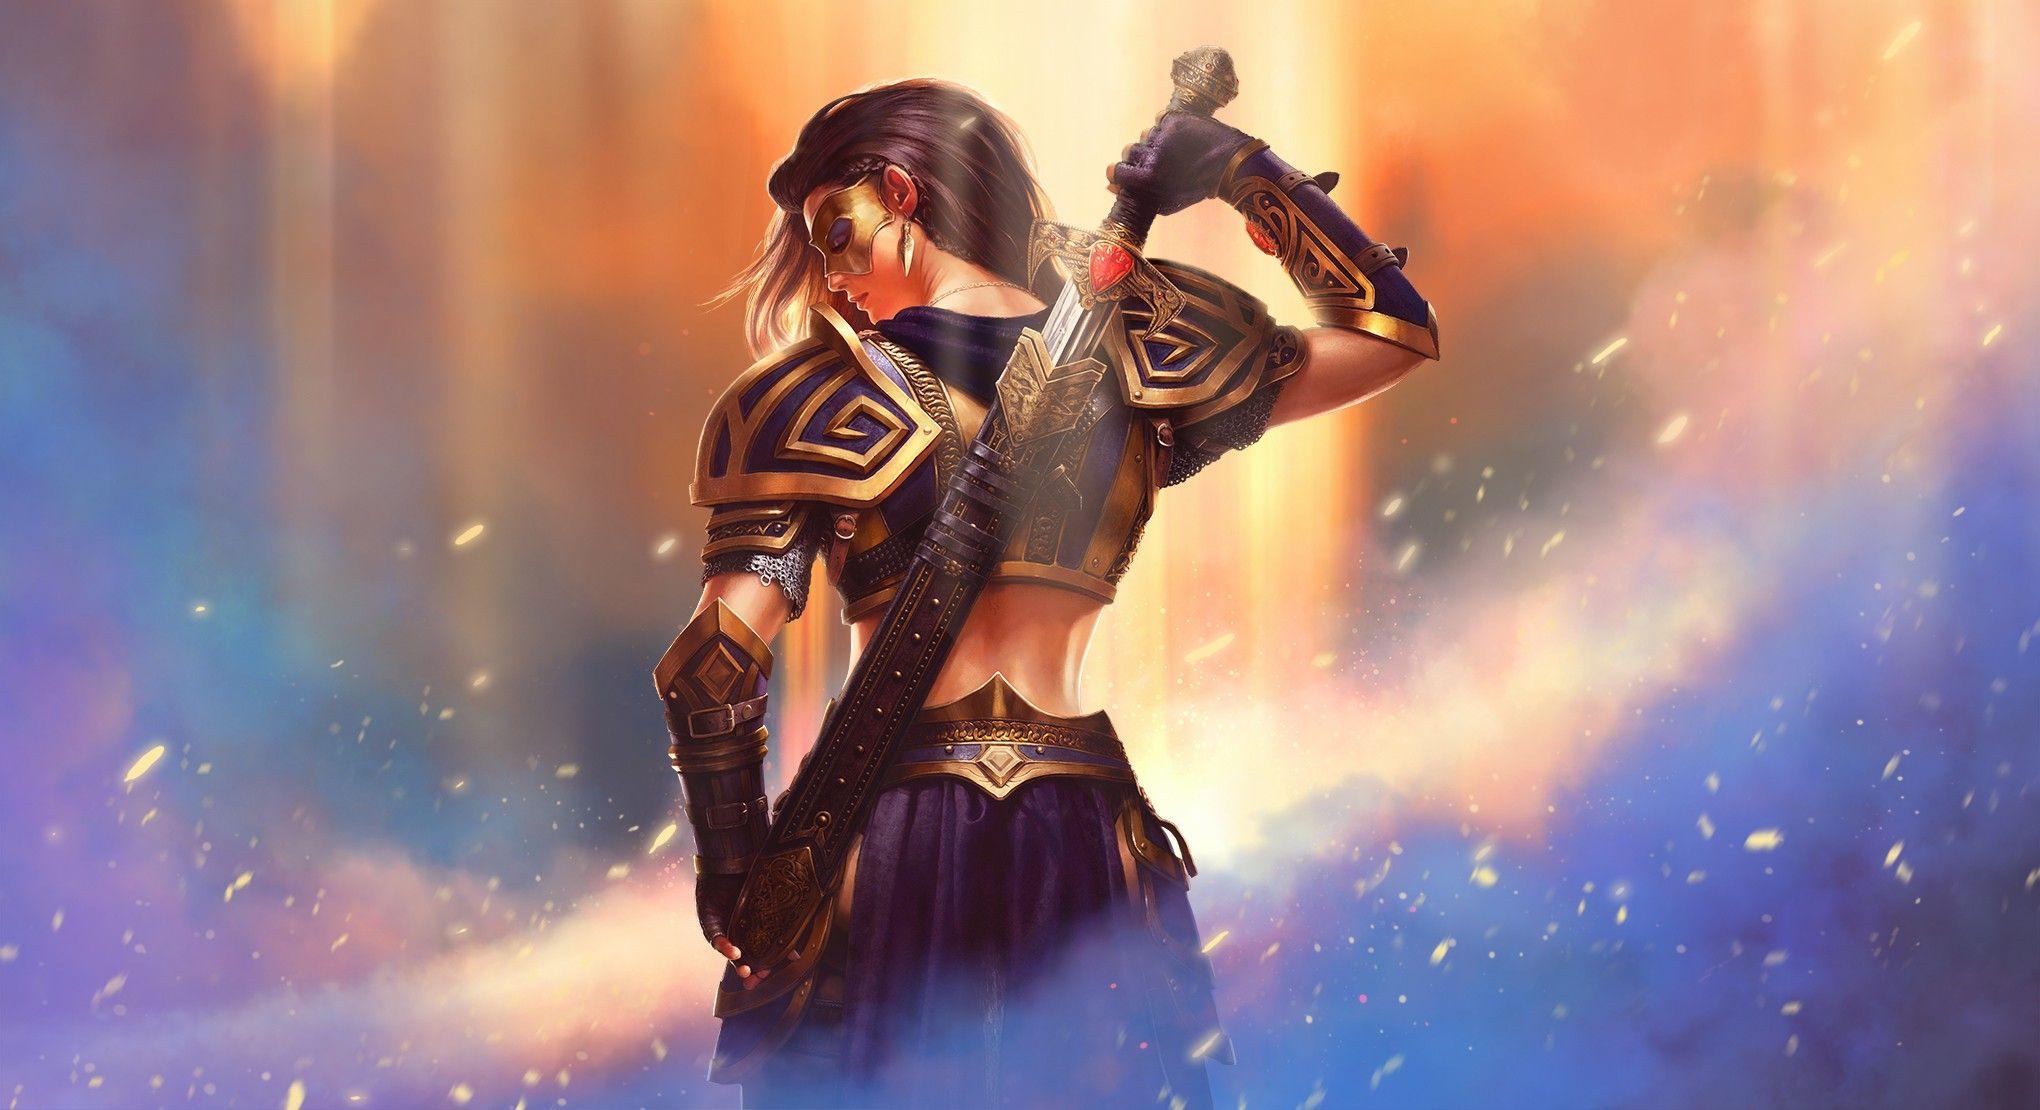 Warrior Fantasy Girl, HD Fantasy Girls, 4k Wallpaper, Image